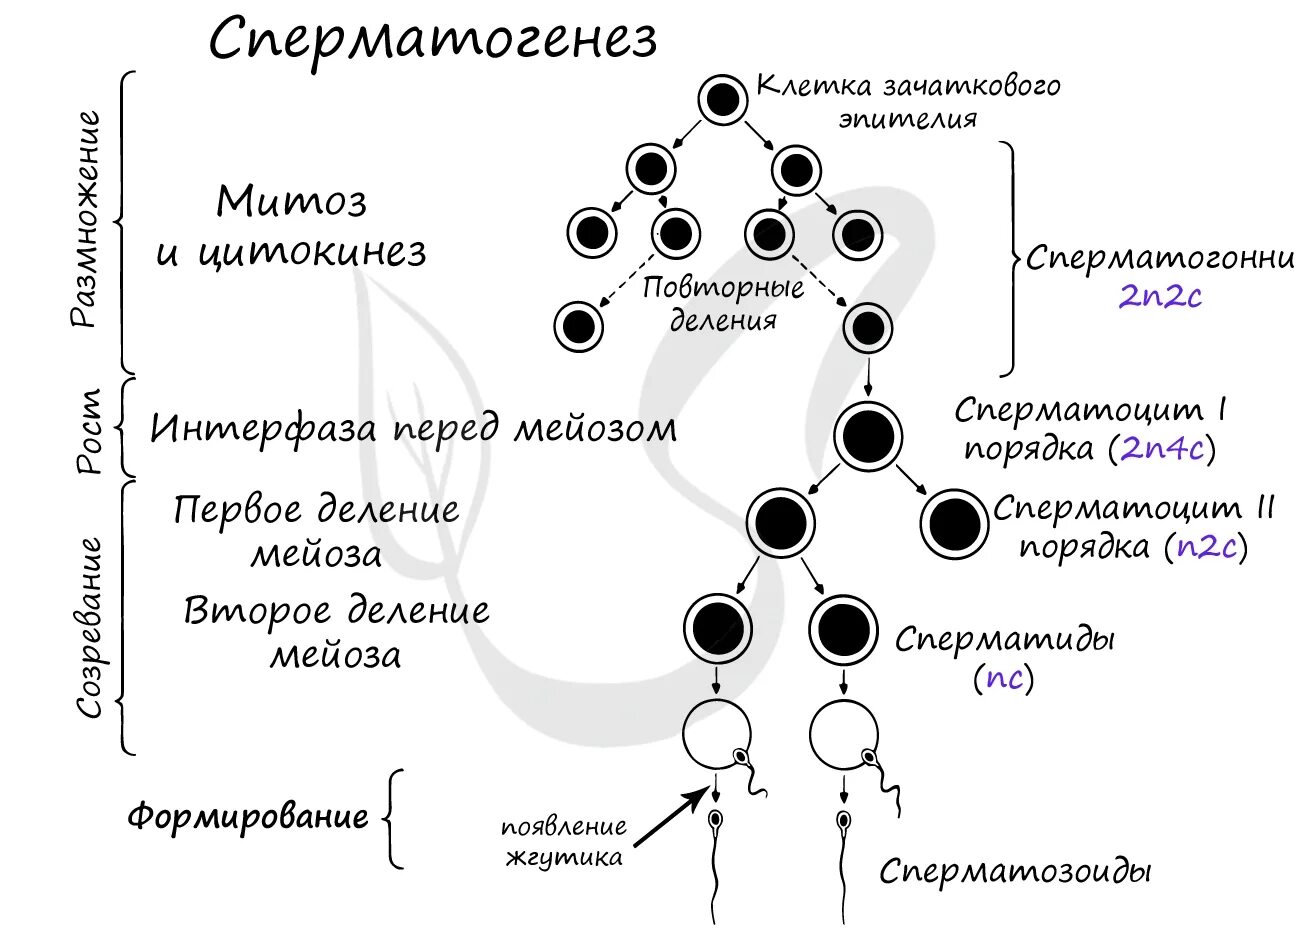 Сперматогенез описание процесса. 2. Гаметогенез. Сперматогенез. Фаза созревания сперматогенеза. Фаза размножения сперматогенеза. Схема процесса сперматогенеза.